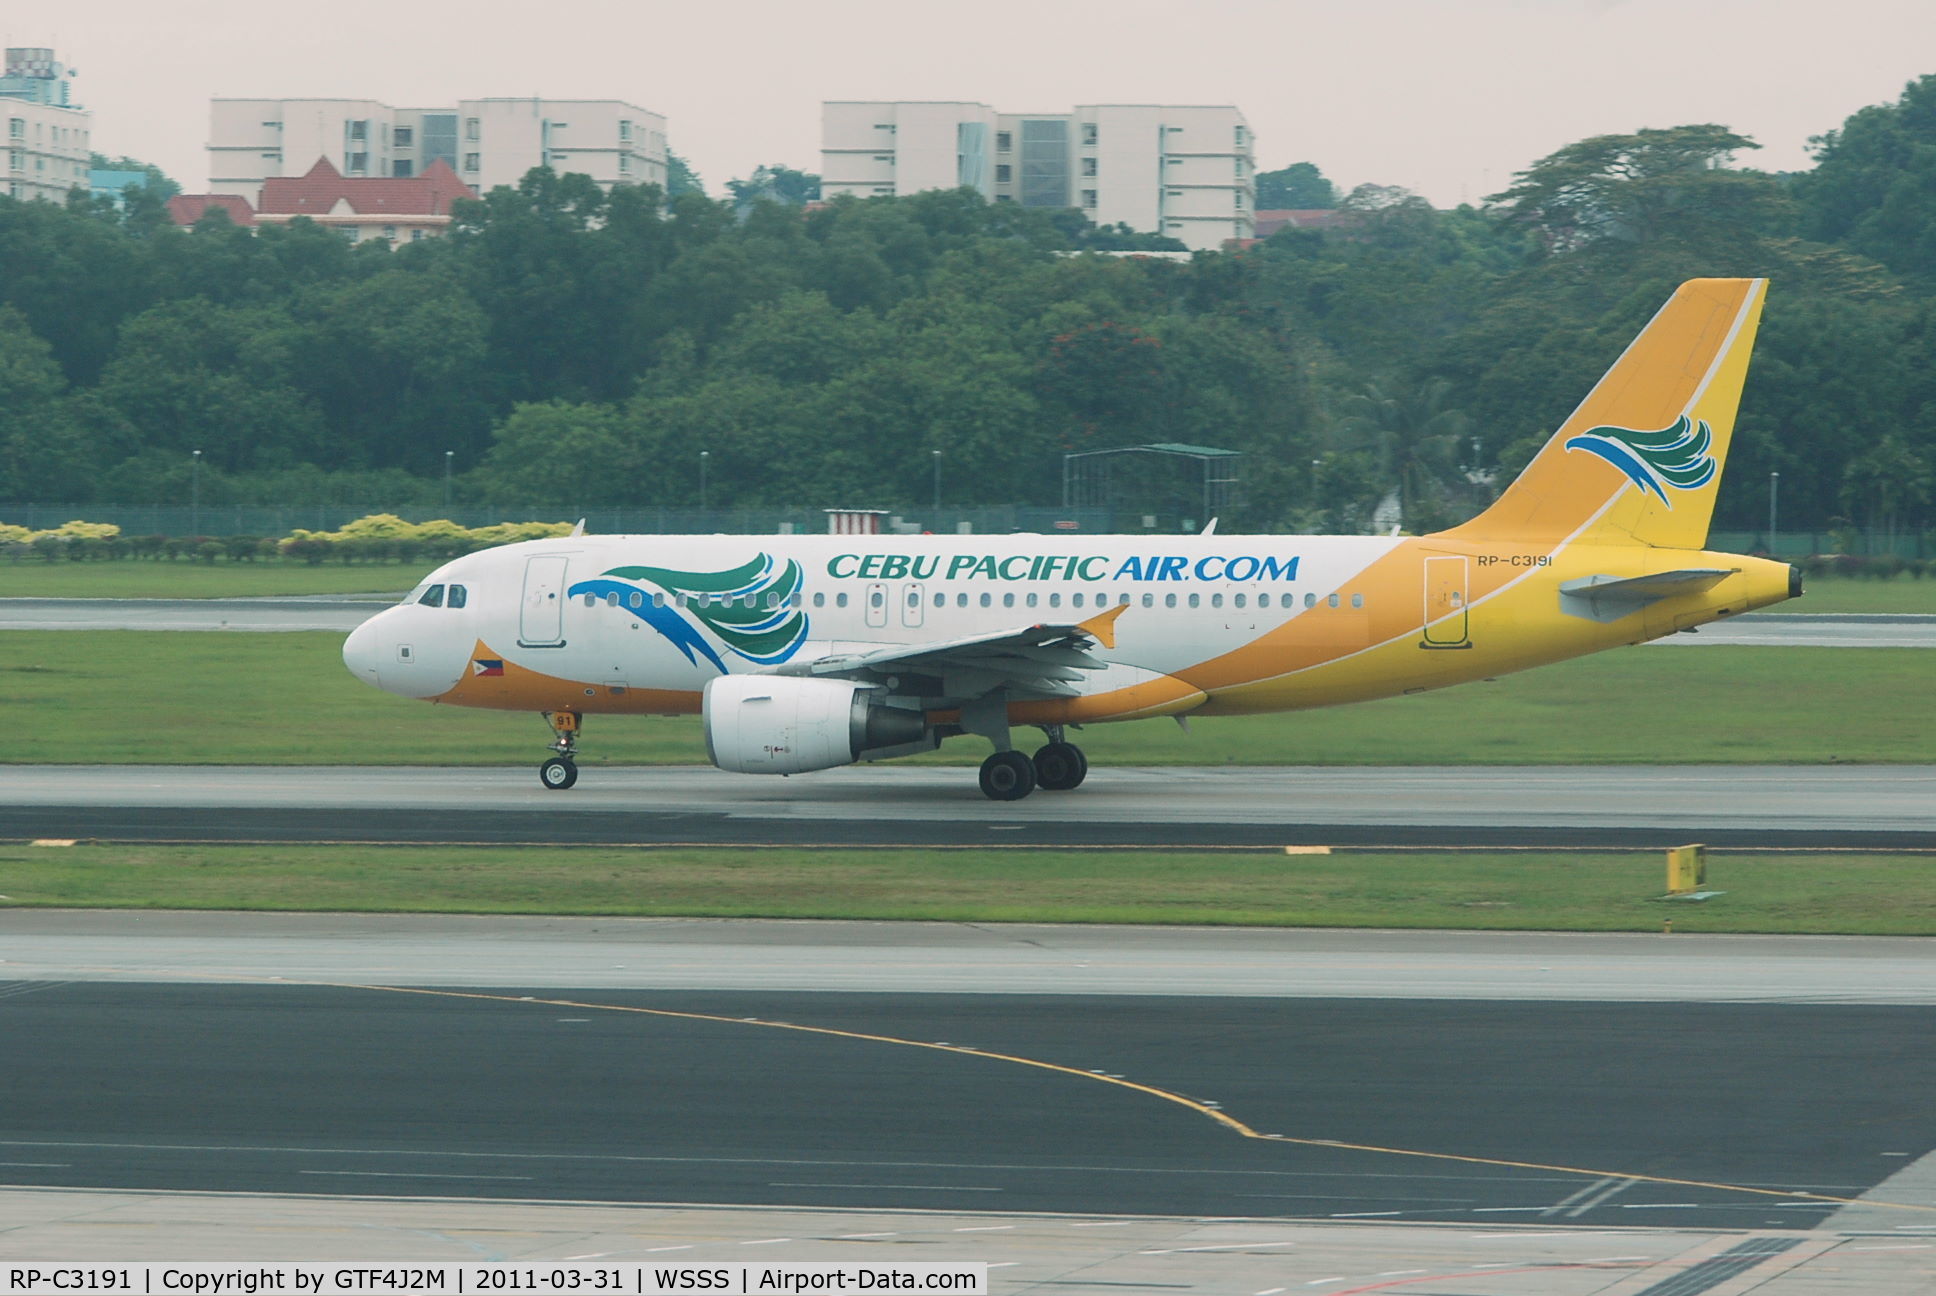 RP-C3191, 2005 Airbus A319-112 C/N 2625, RP-C3191  Cebu Pacific Air at Changi 31.3.11